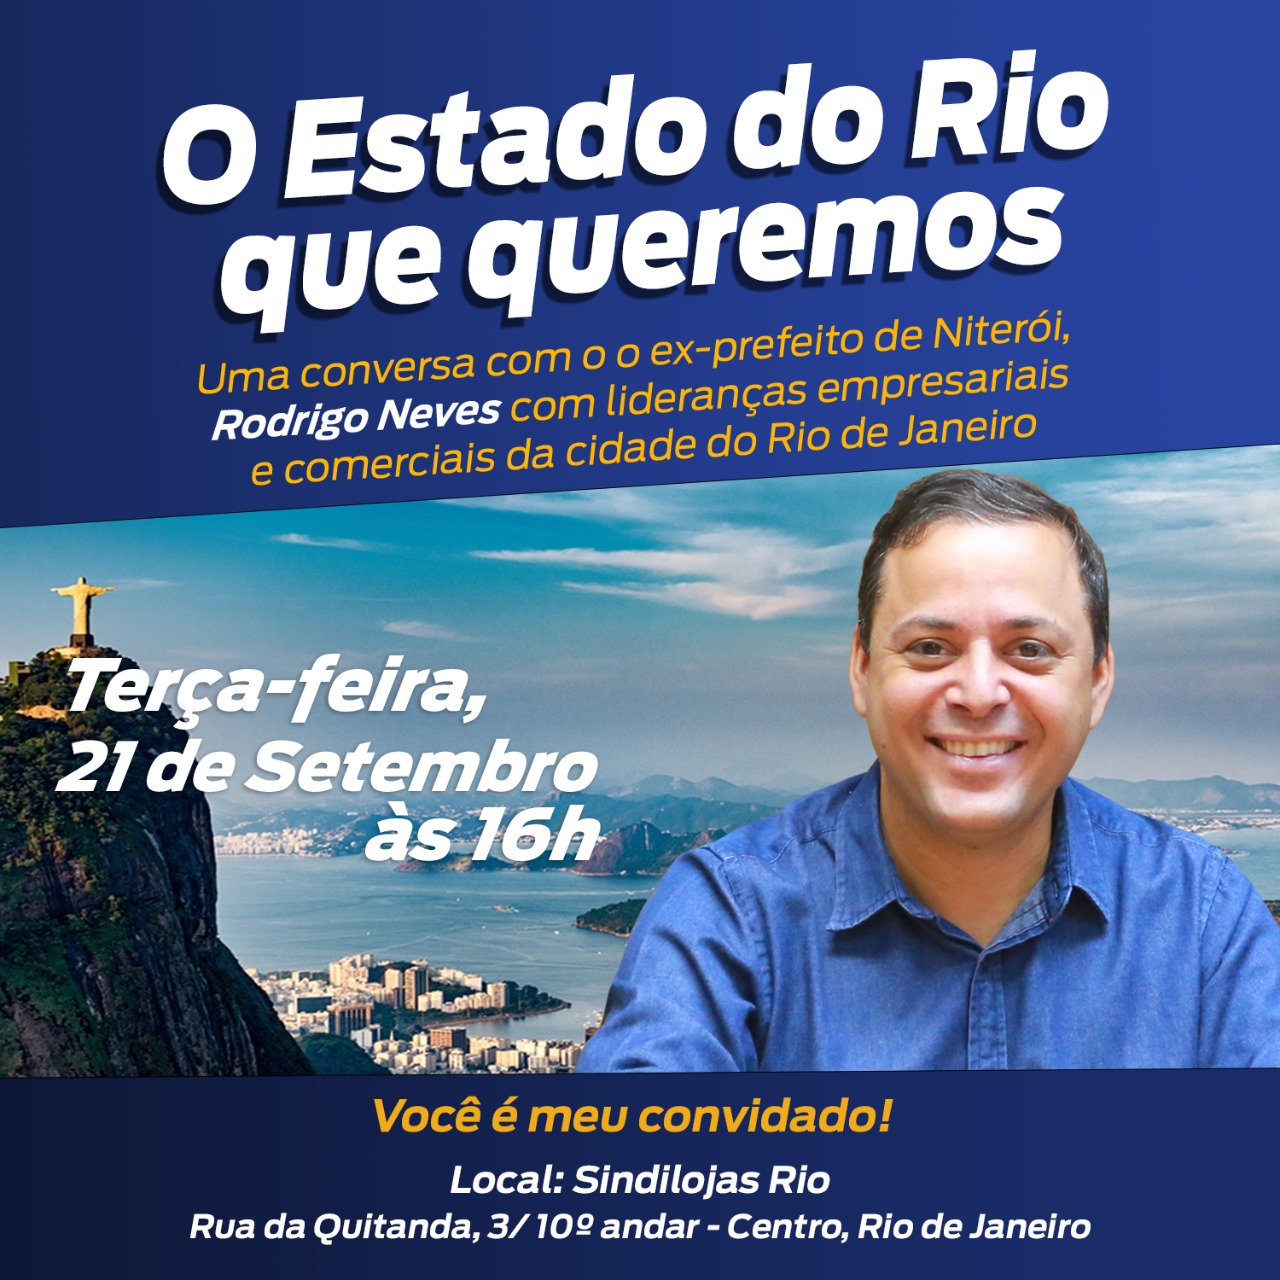 No momento você está vendo O Estado do Rio que queremos